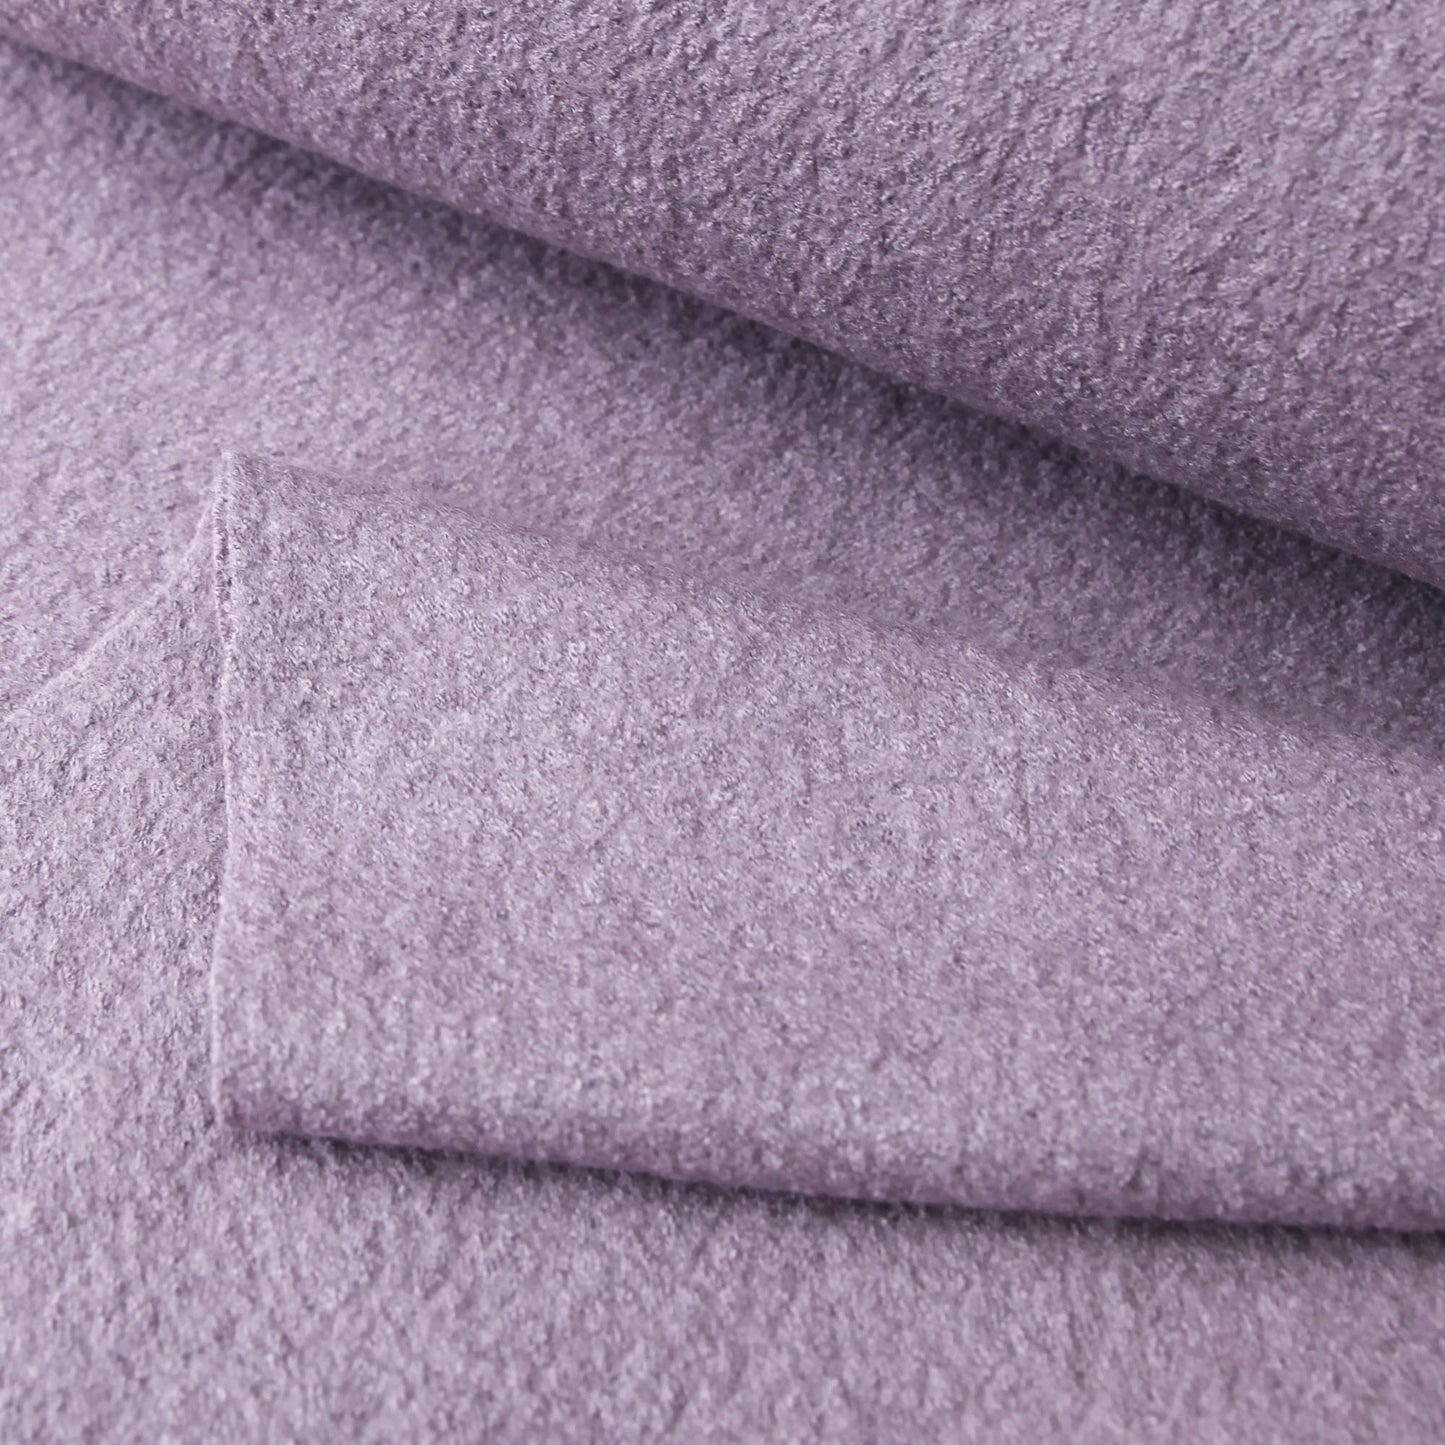 Wollmischgewebe - Walkstoff Viskose mit Wolle in der Farbe fliederWollstoffeStoffe KudellinoStoffe Kudellino